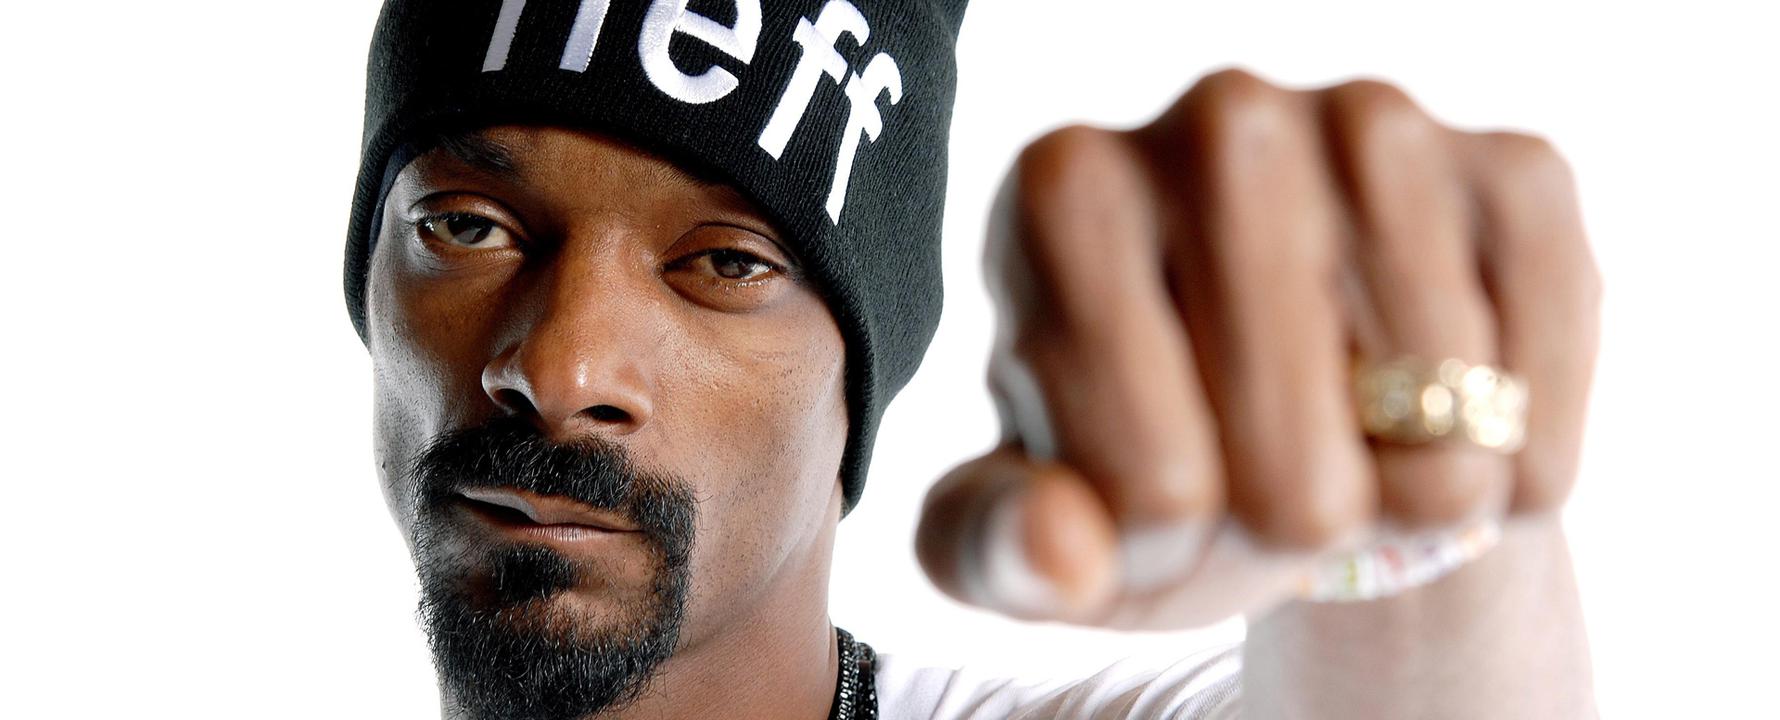 Fotografía promocional de Snoop Dogg